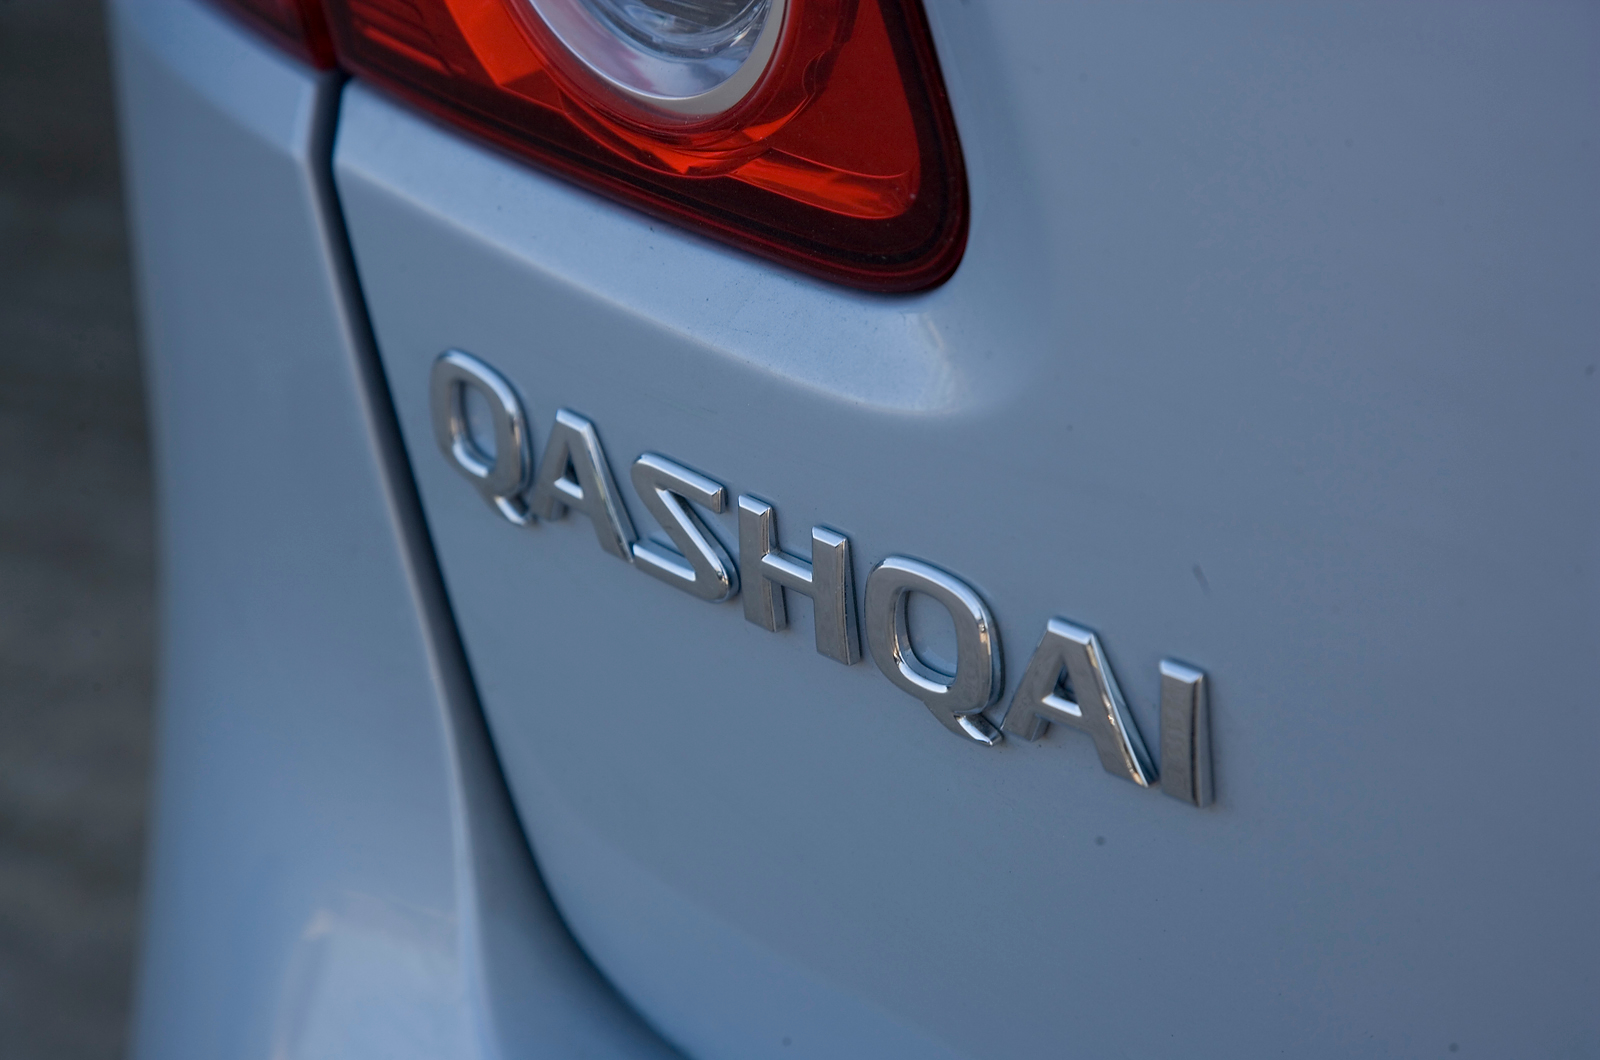 Nissan Qashqai badging